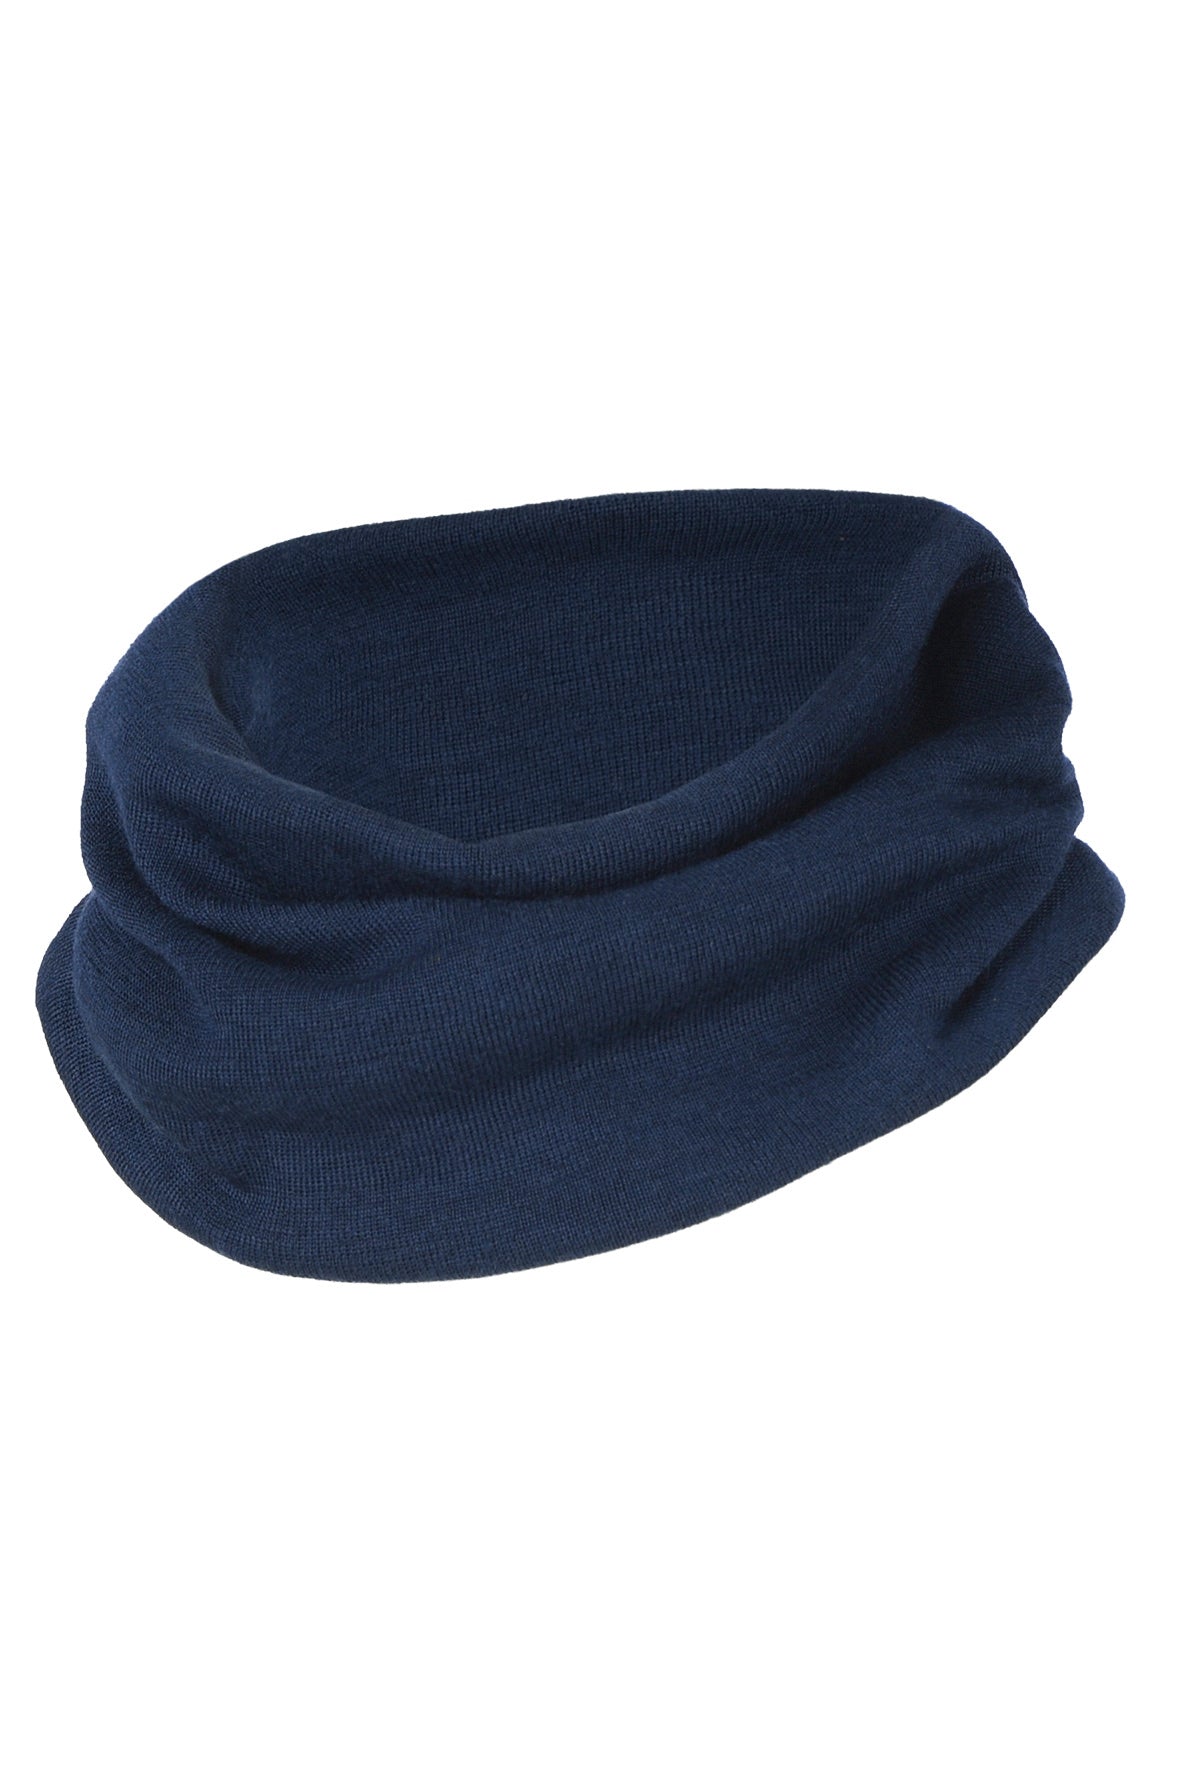 Engel silk wool loop scarf in navy